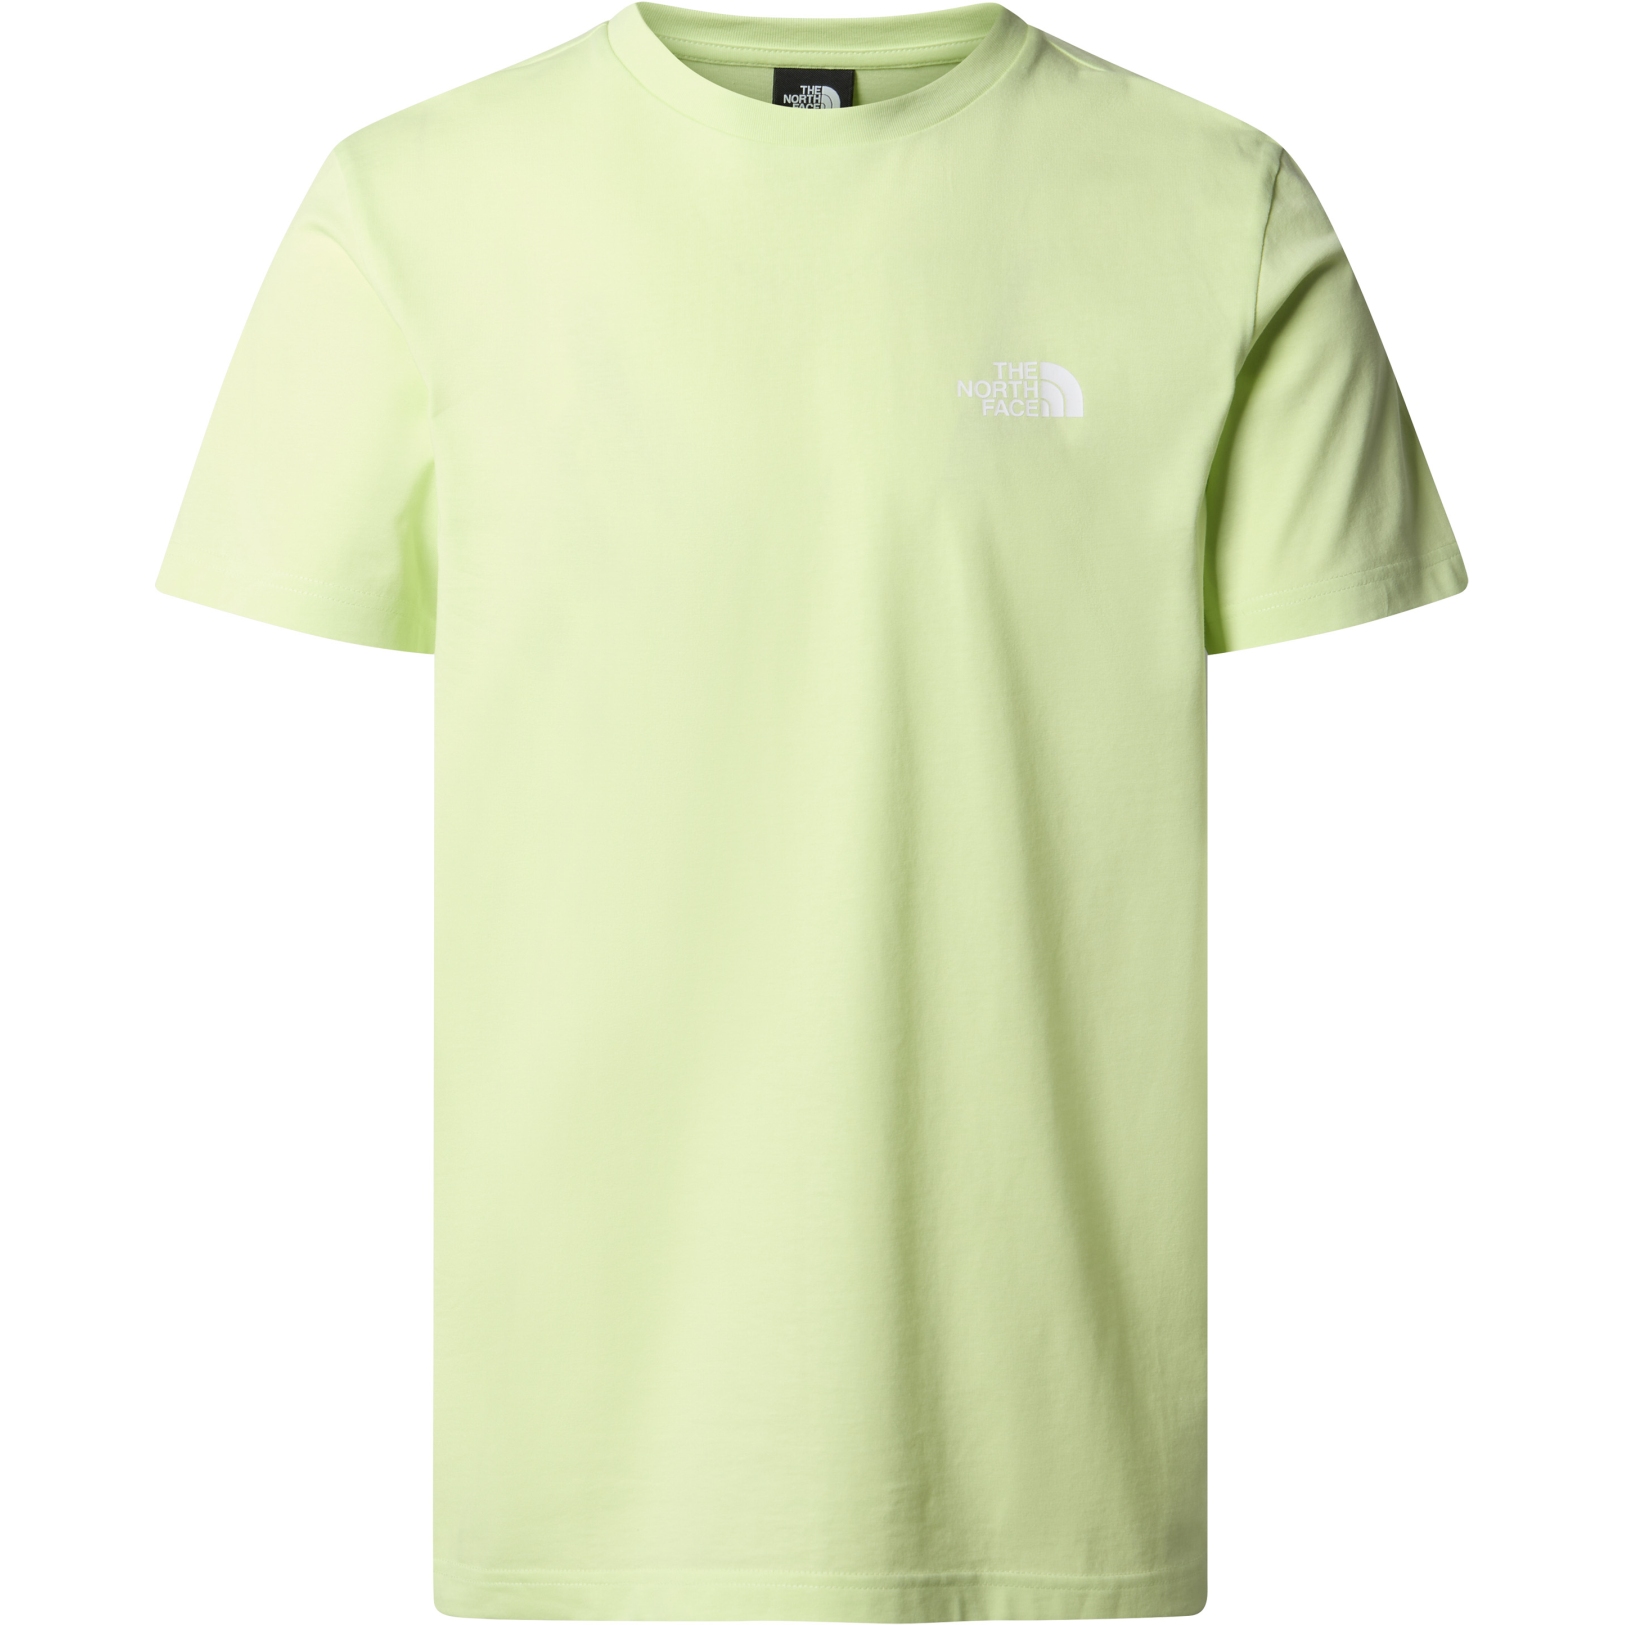 Produktbild von The North Face Simple Dome T-Shirt Herren - Astro Lime